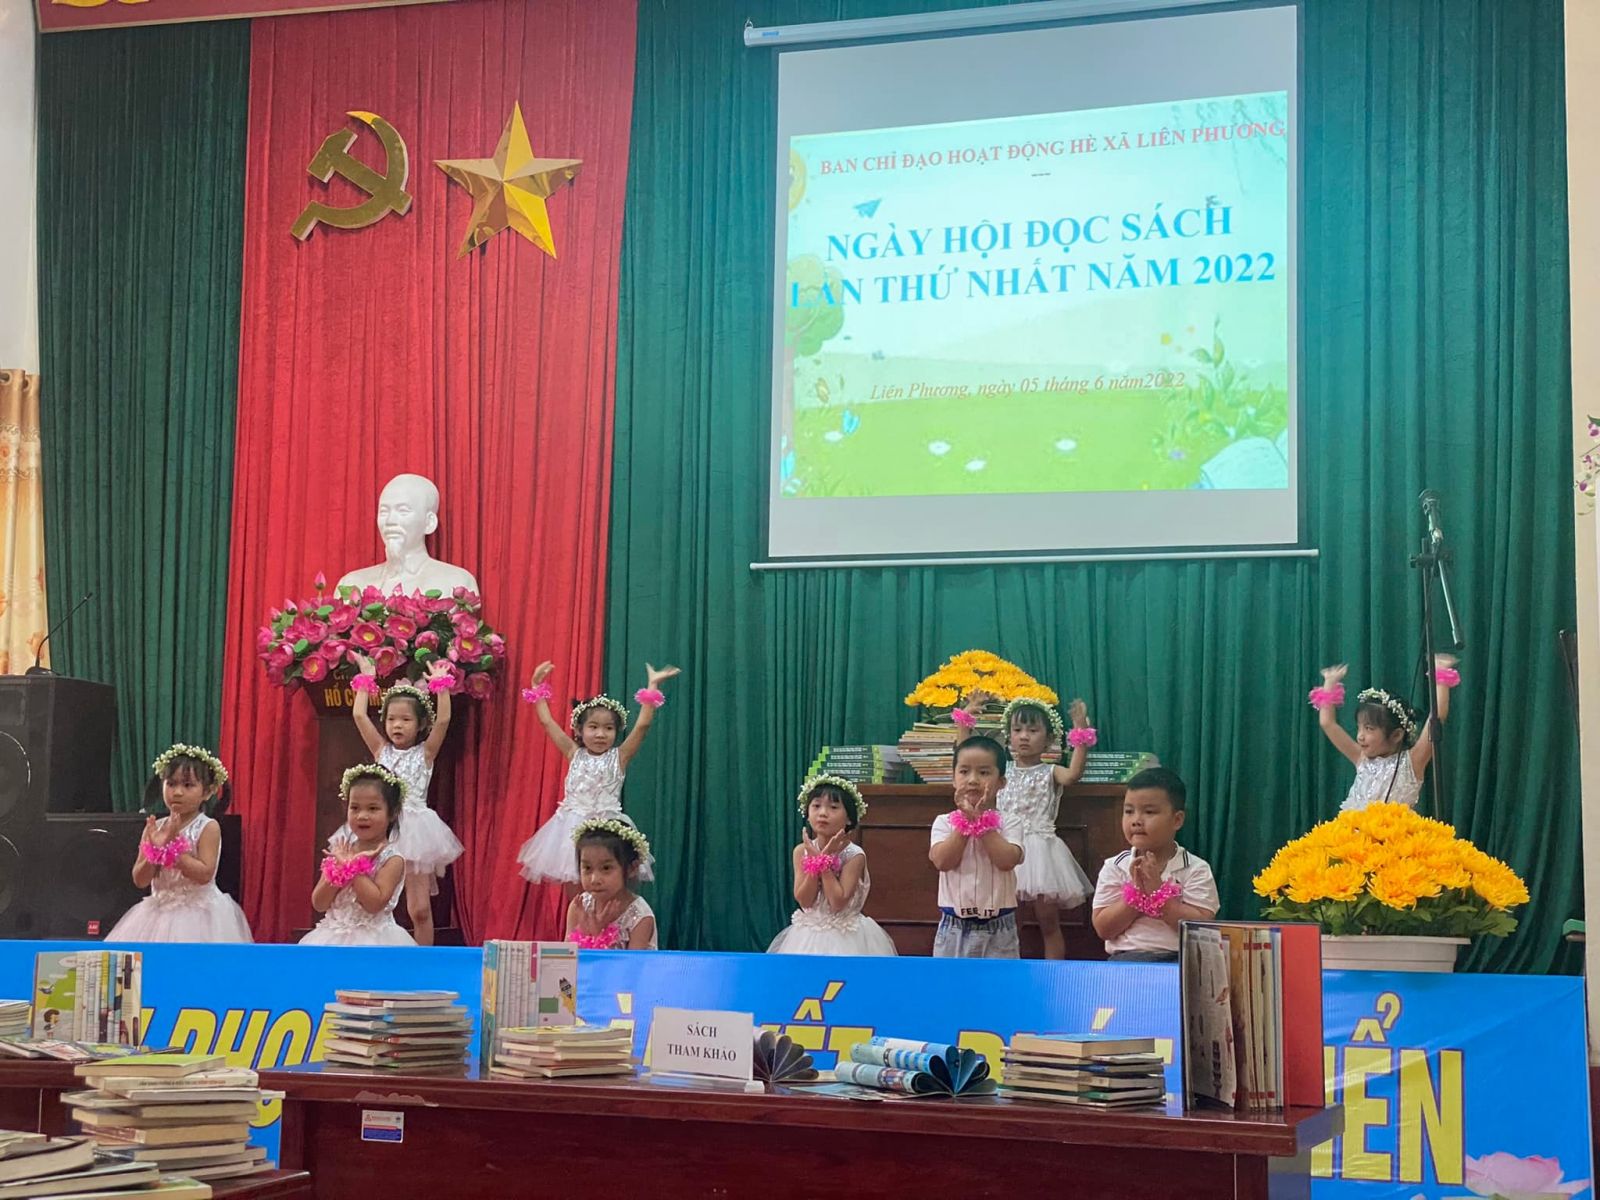 Thành đoàn Hưng Yên phối hợp tổ chức Ngày hội đọc sách lần thứ nhất năm 2022 "nuôi dưỡng tình yêu sách và văn hoá đọc cho thanh thiếu nhi”